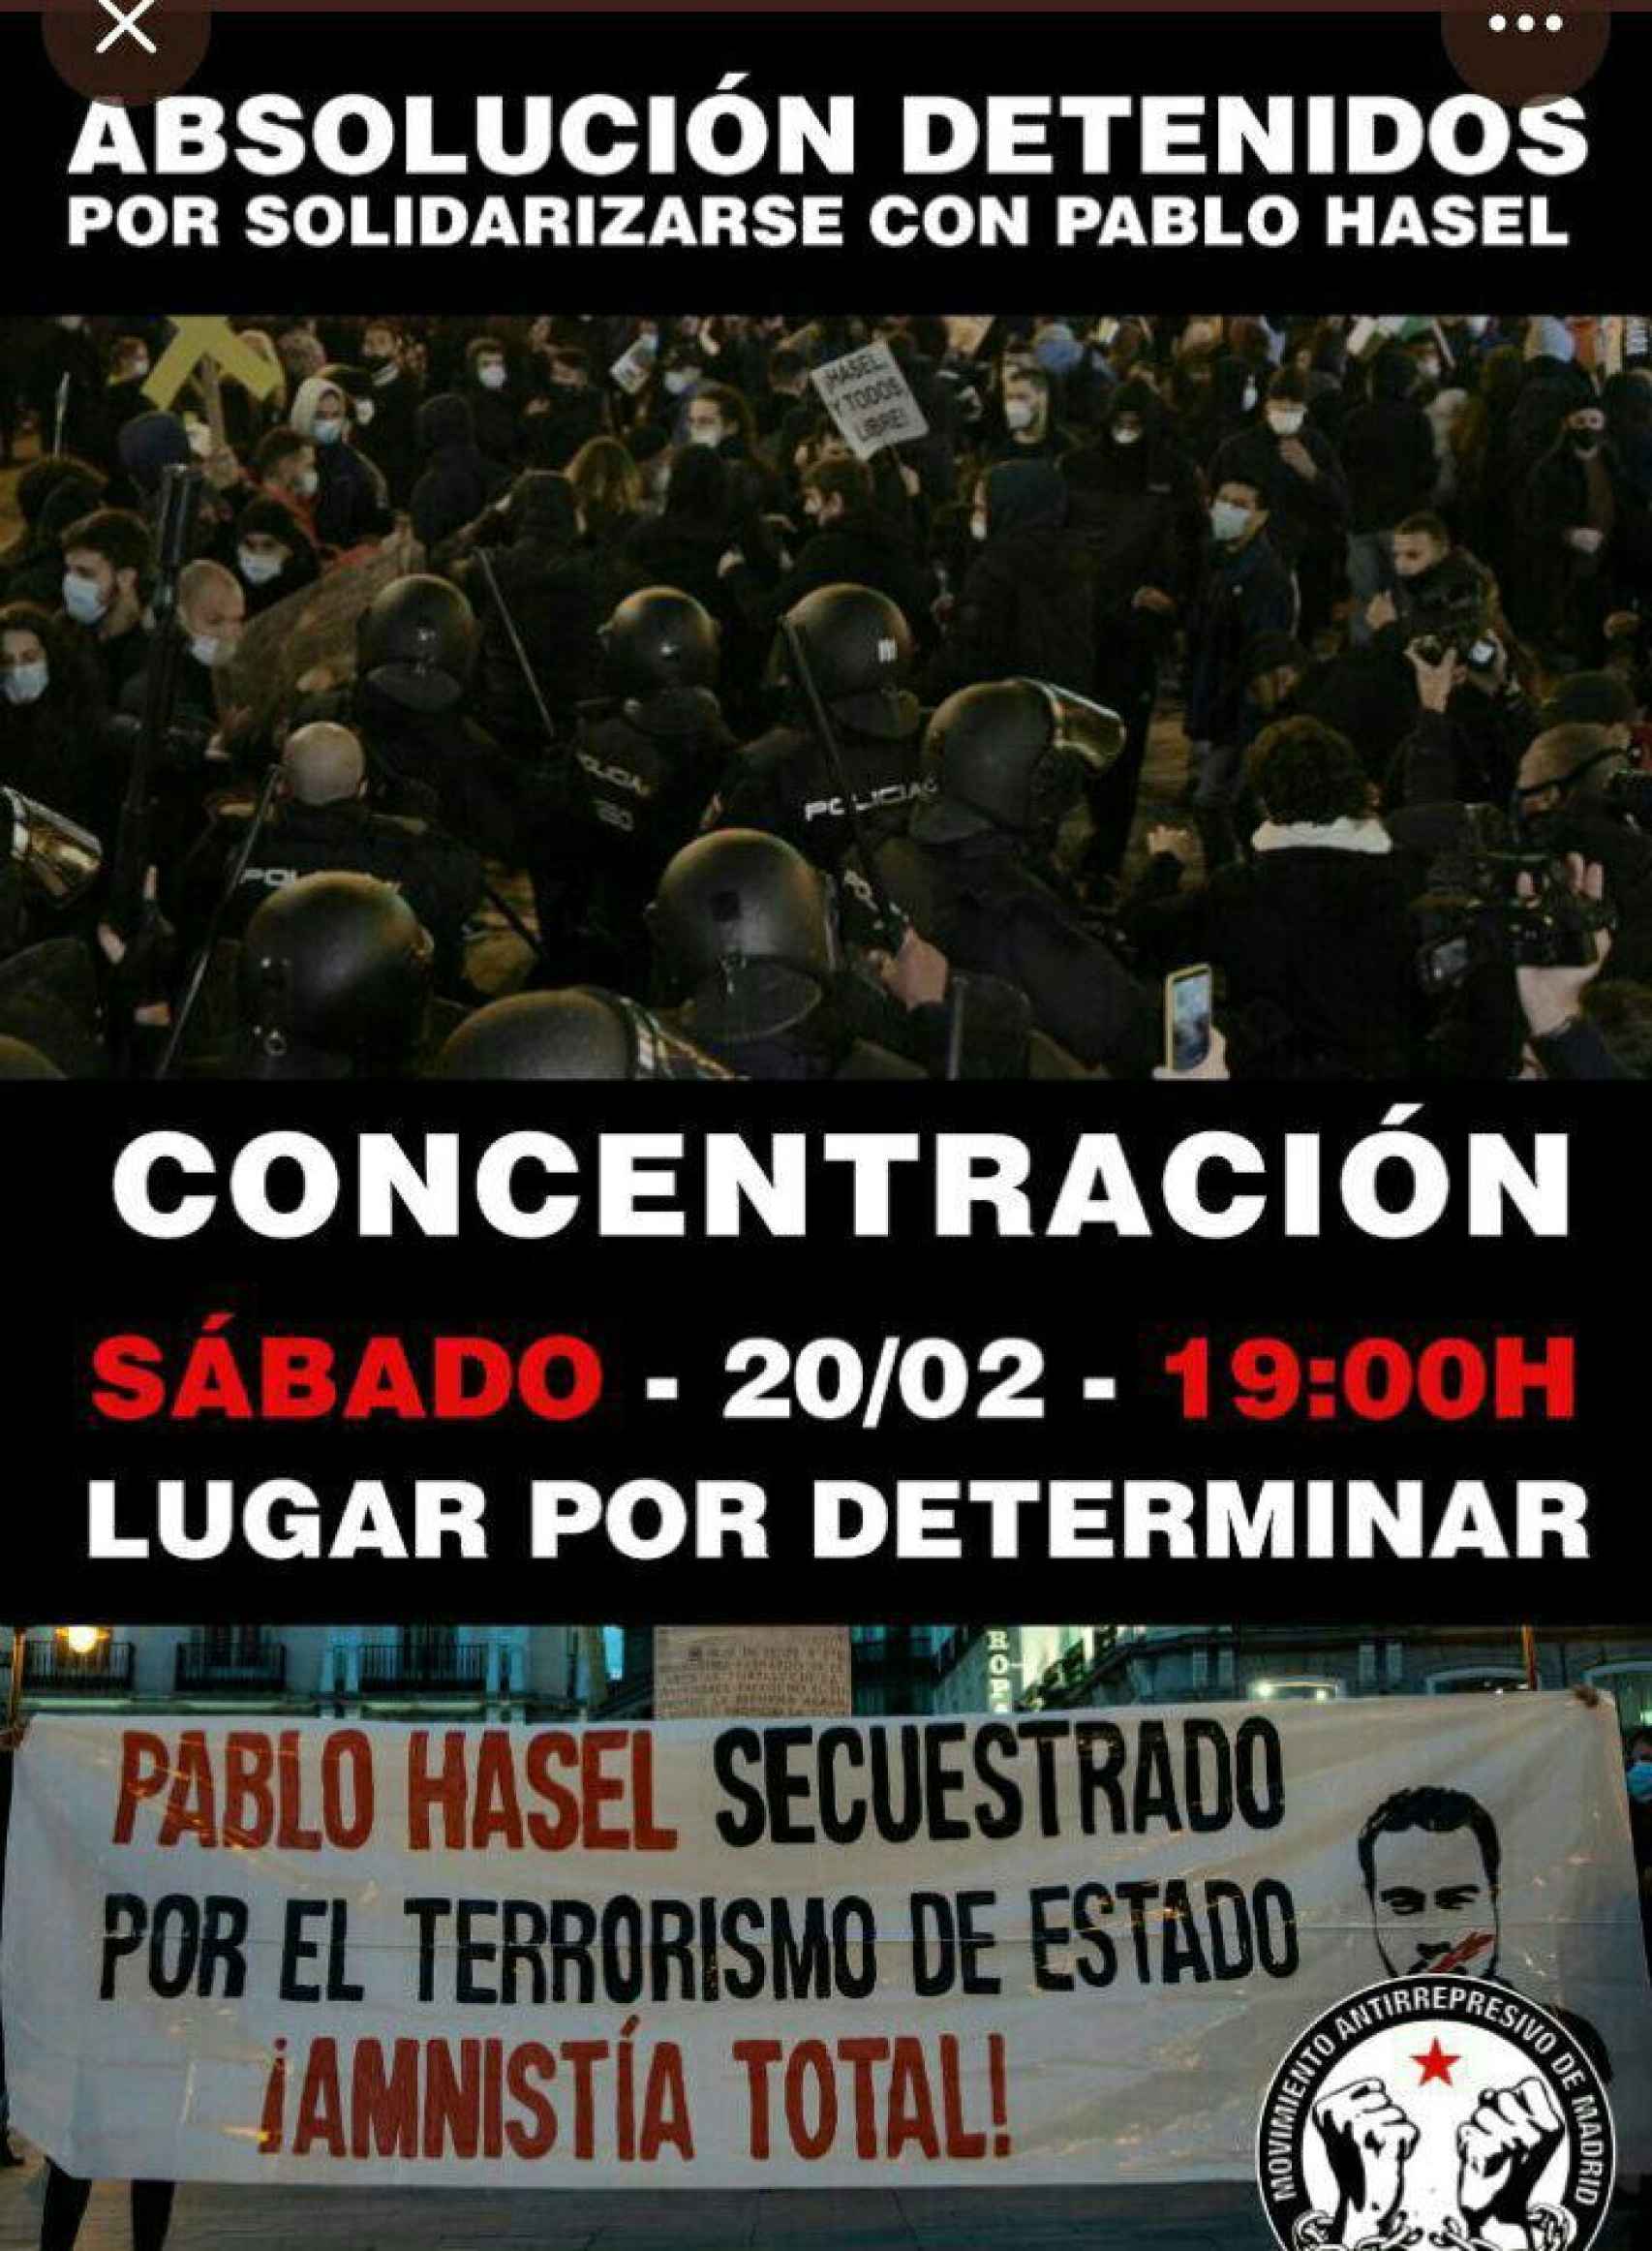 Convocatoria de protestas pro Hasél en Madrid.